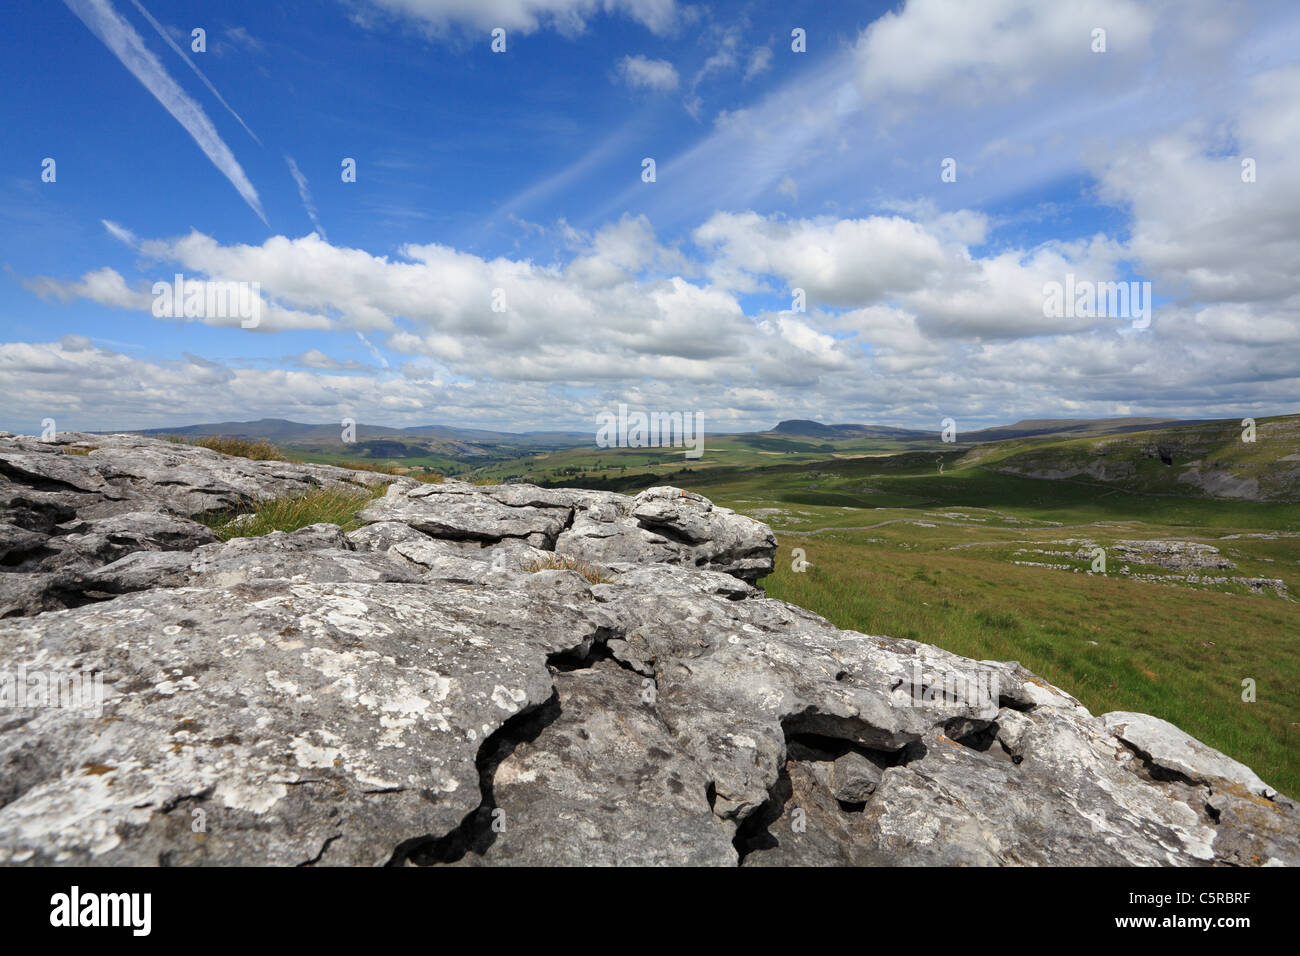 Los tres picos de los valles de Yorkshire y el pavimento de piedra caliza. Victoria cueva puede verse a la derecha, todos parte de una famosa carrera Foto de stock